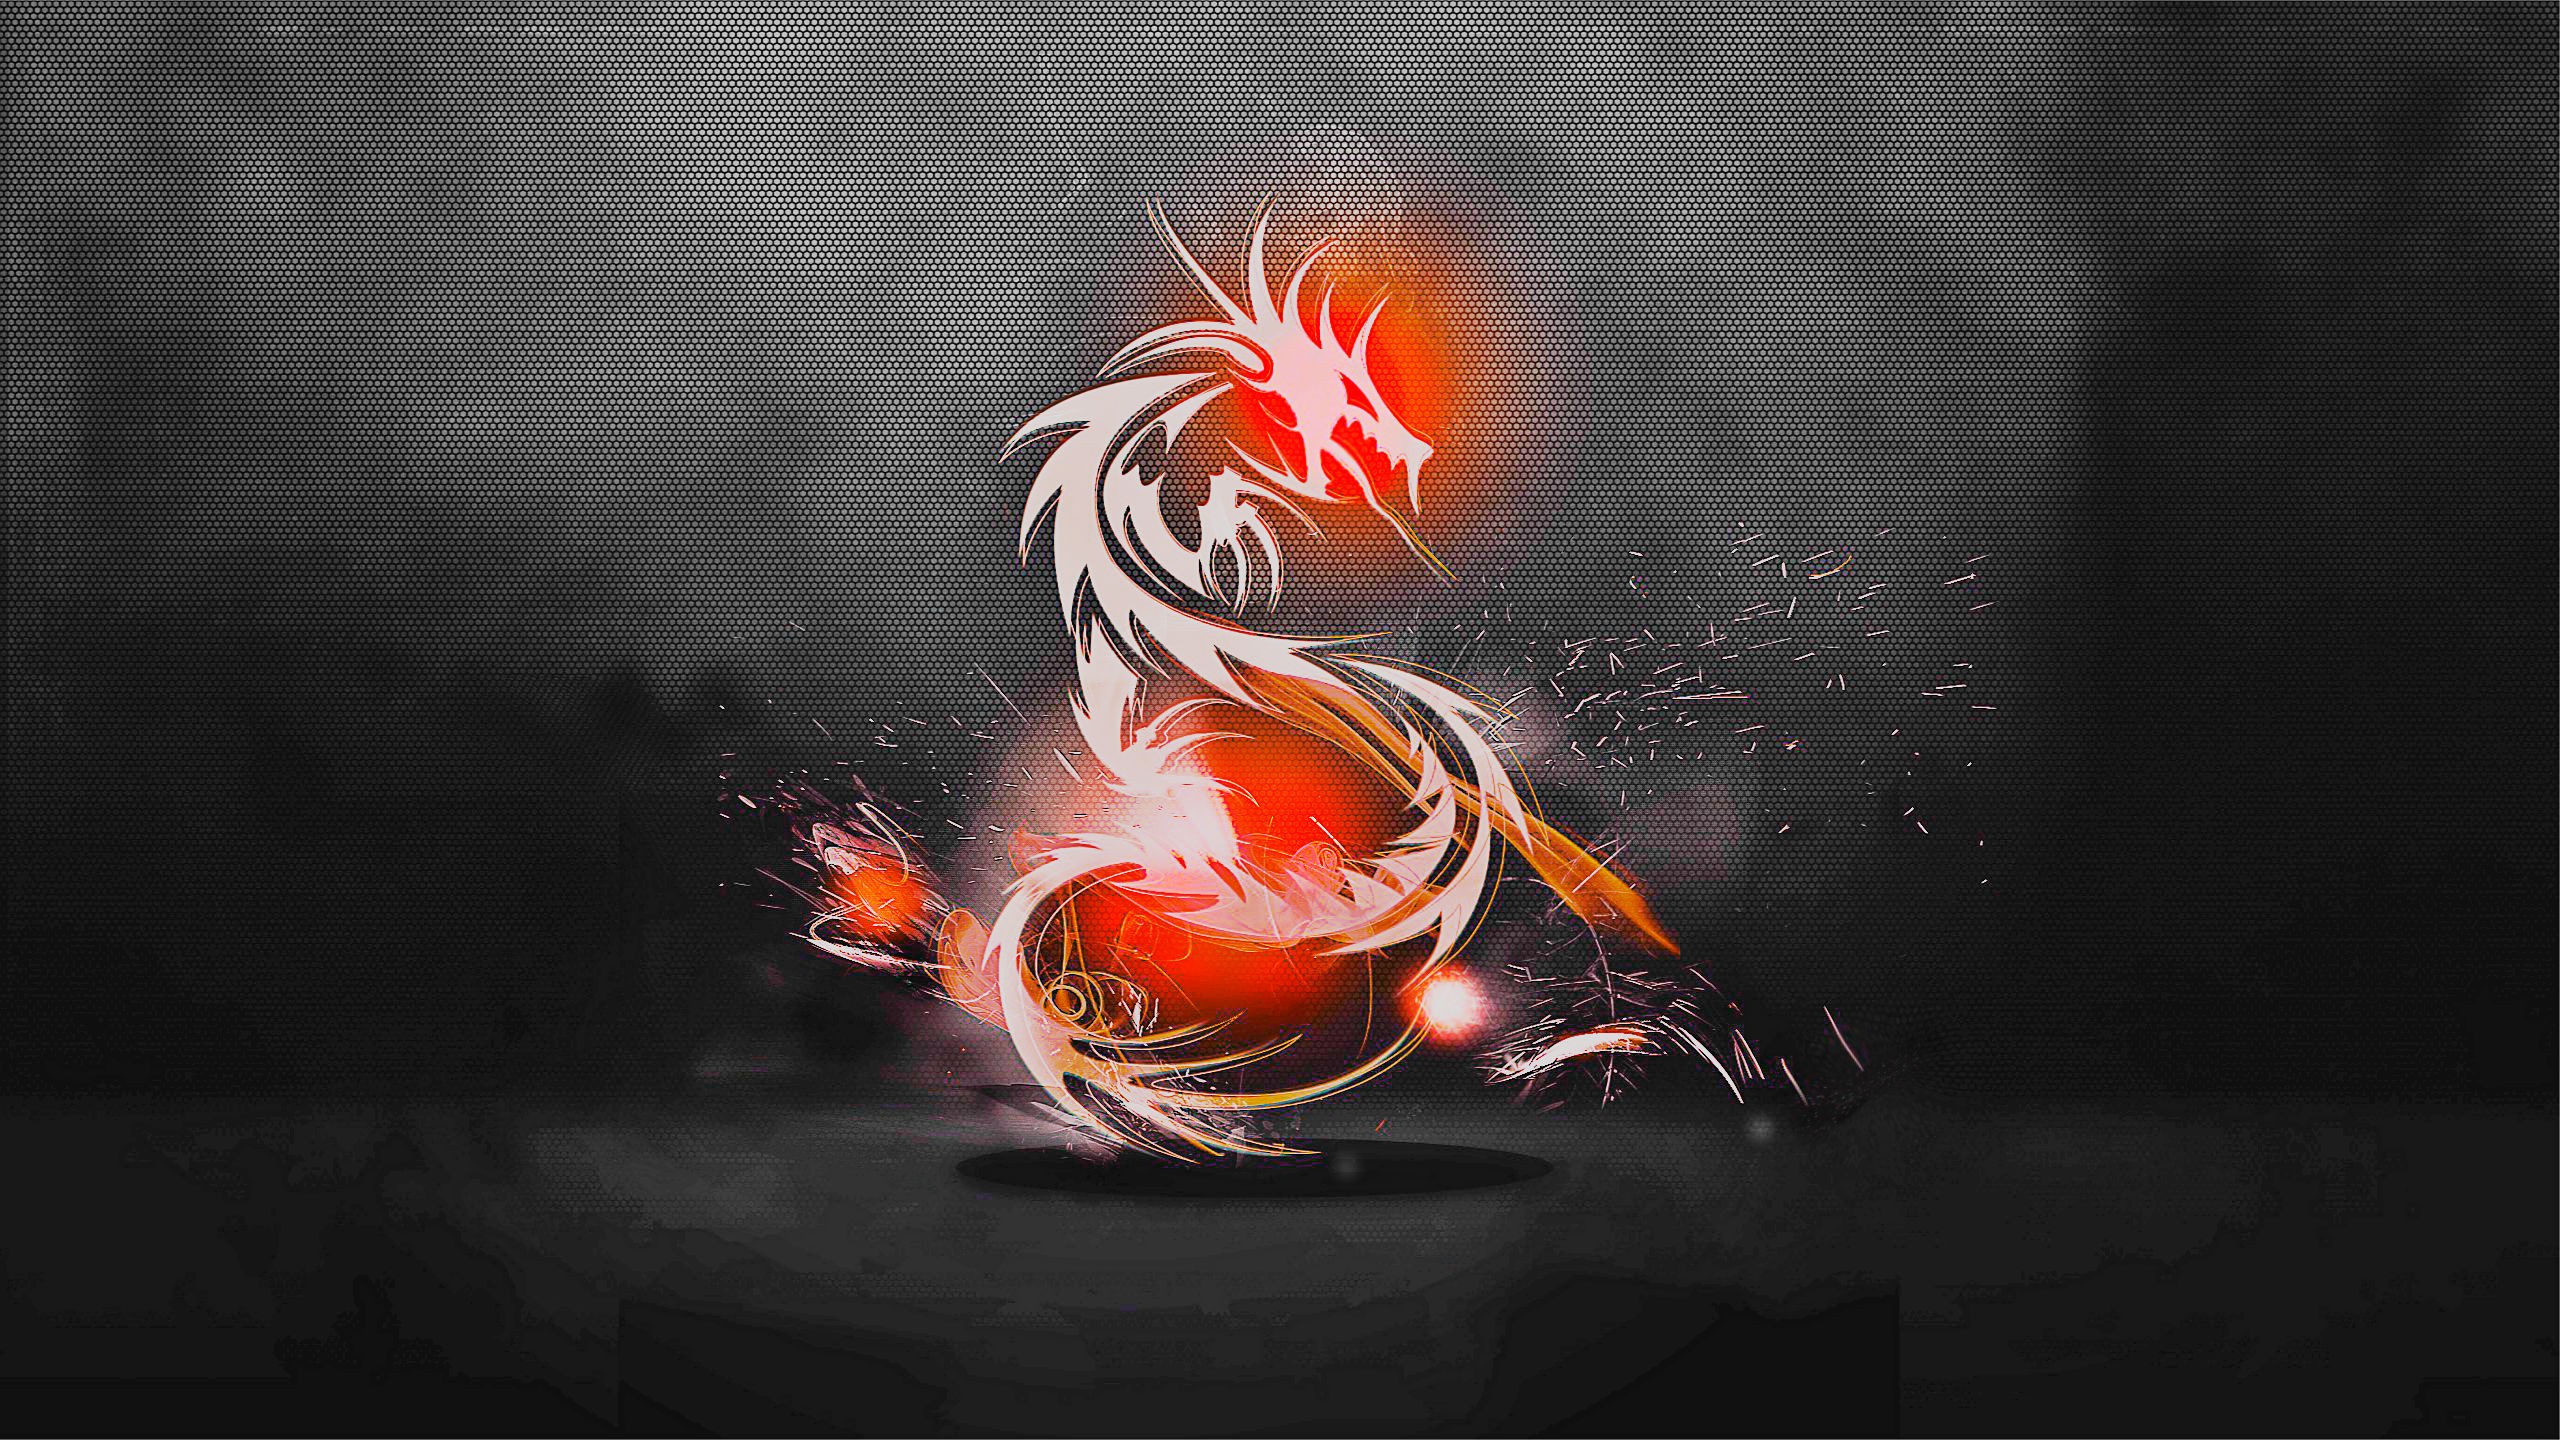  Dragons Wallpaper 2560x1440 Abstract Dragons Red Dragon Logos 2560x1440